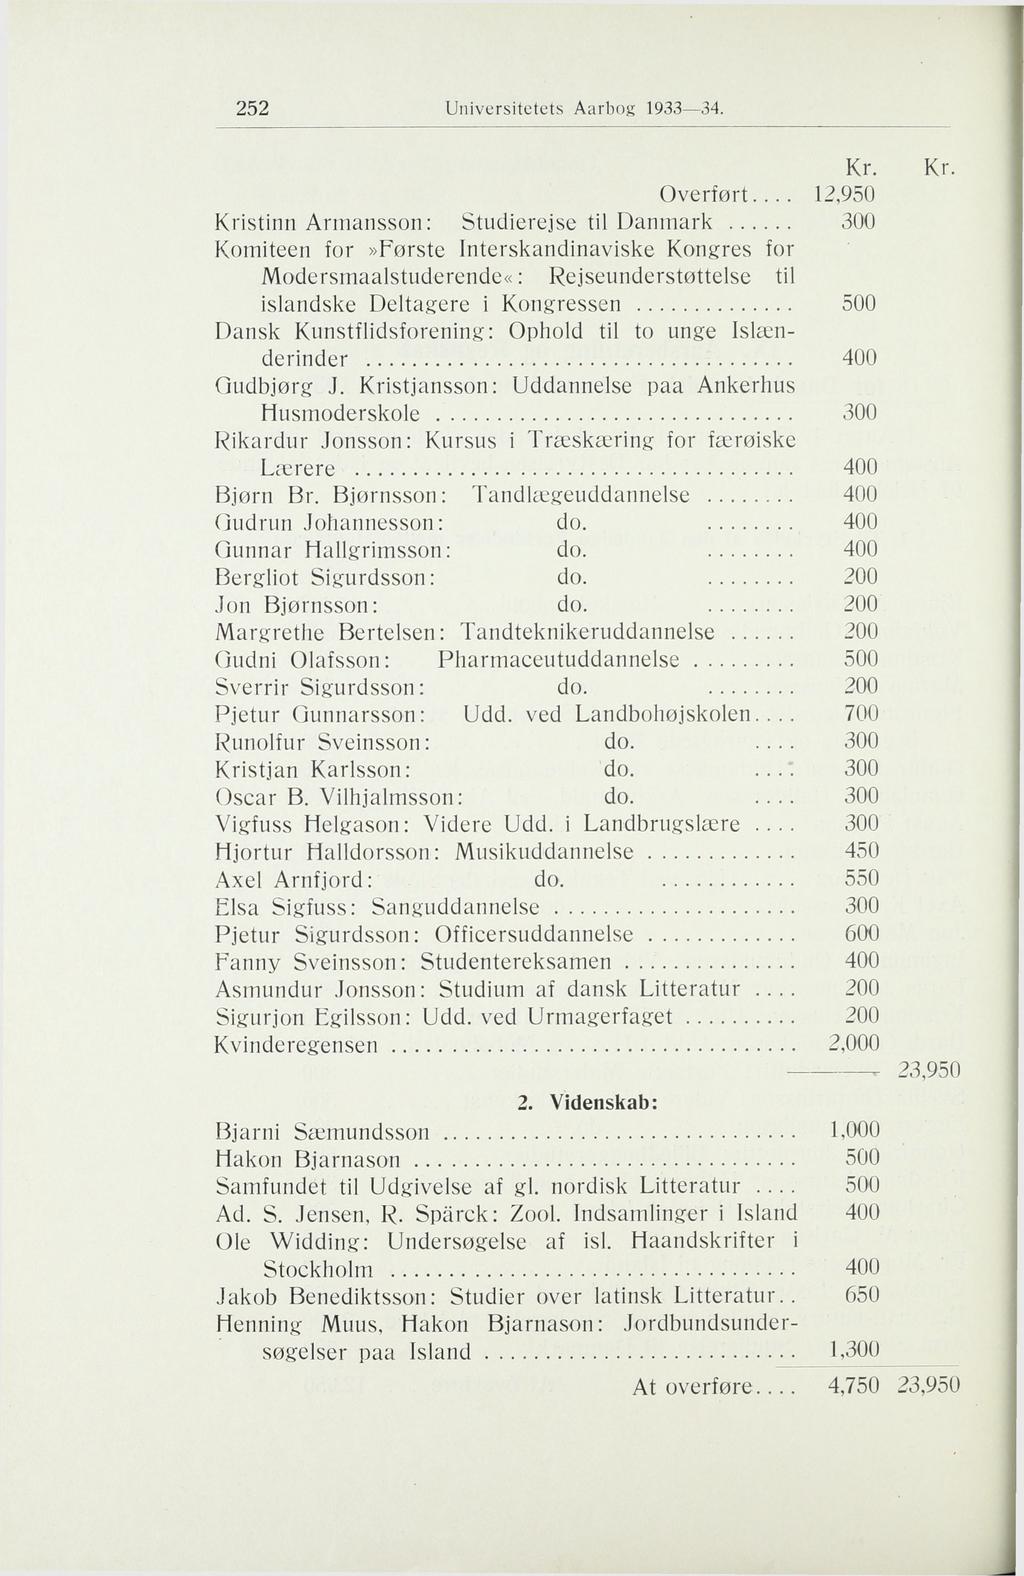 252 Universitetets Aarbog 1933 34. Overført.